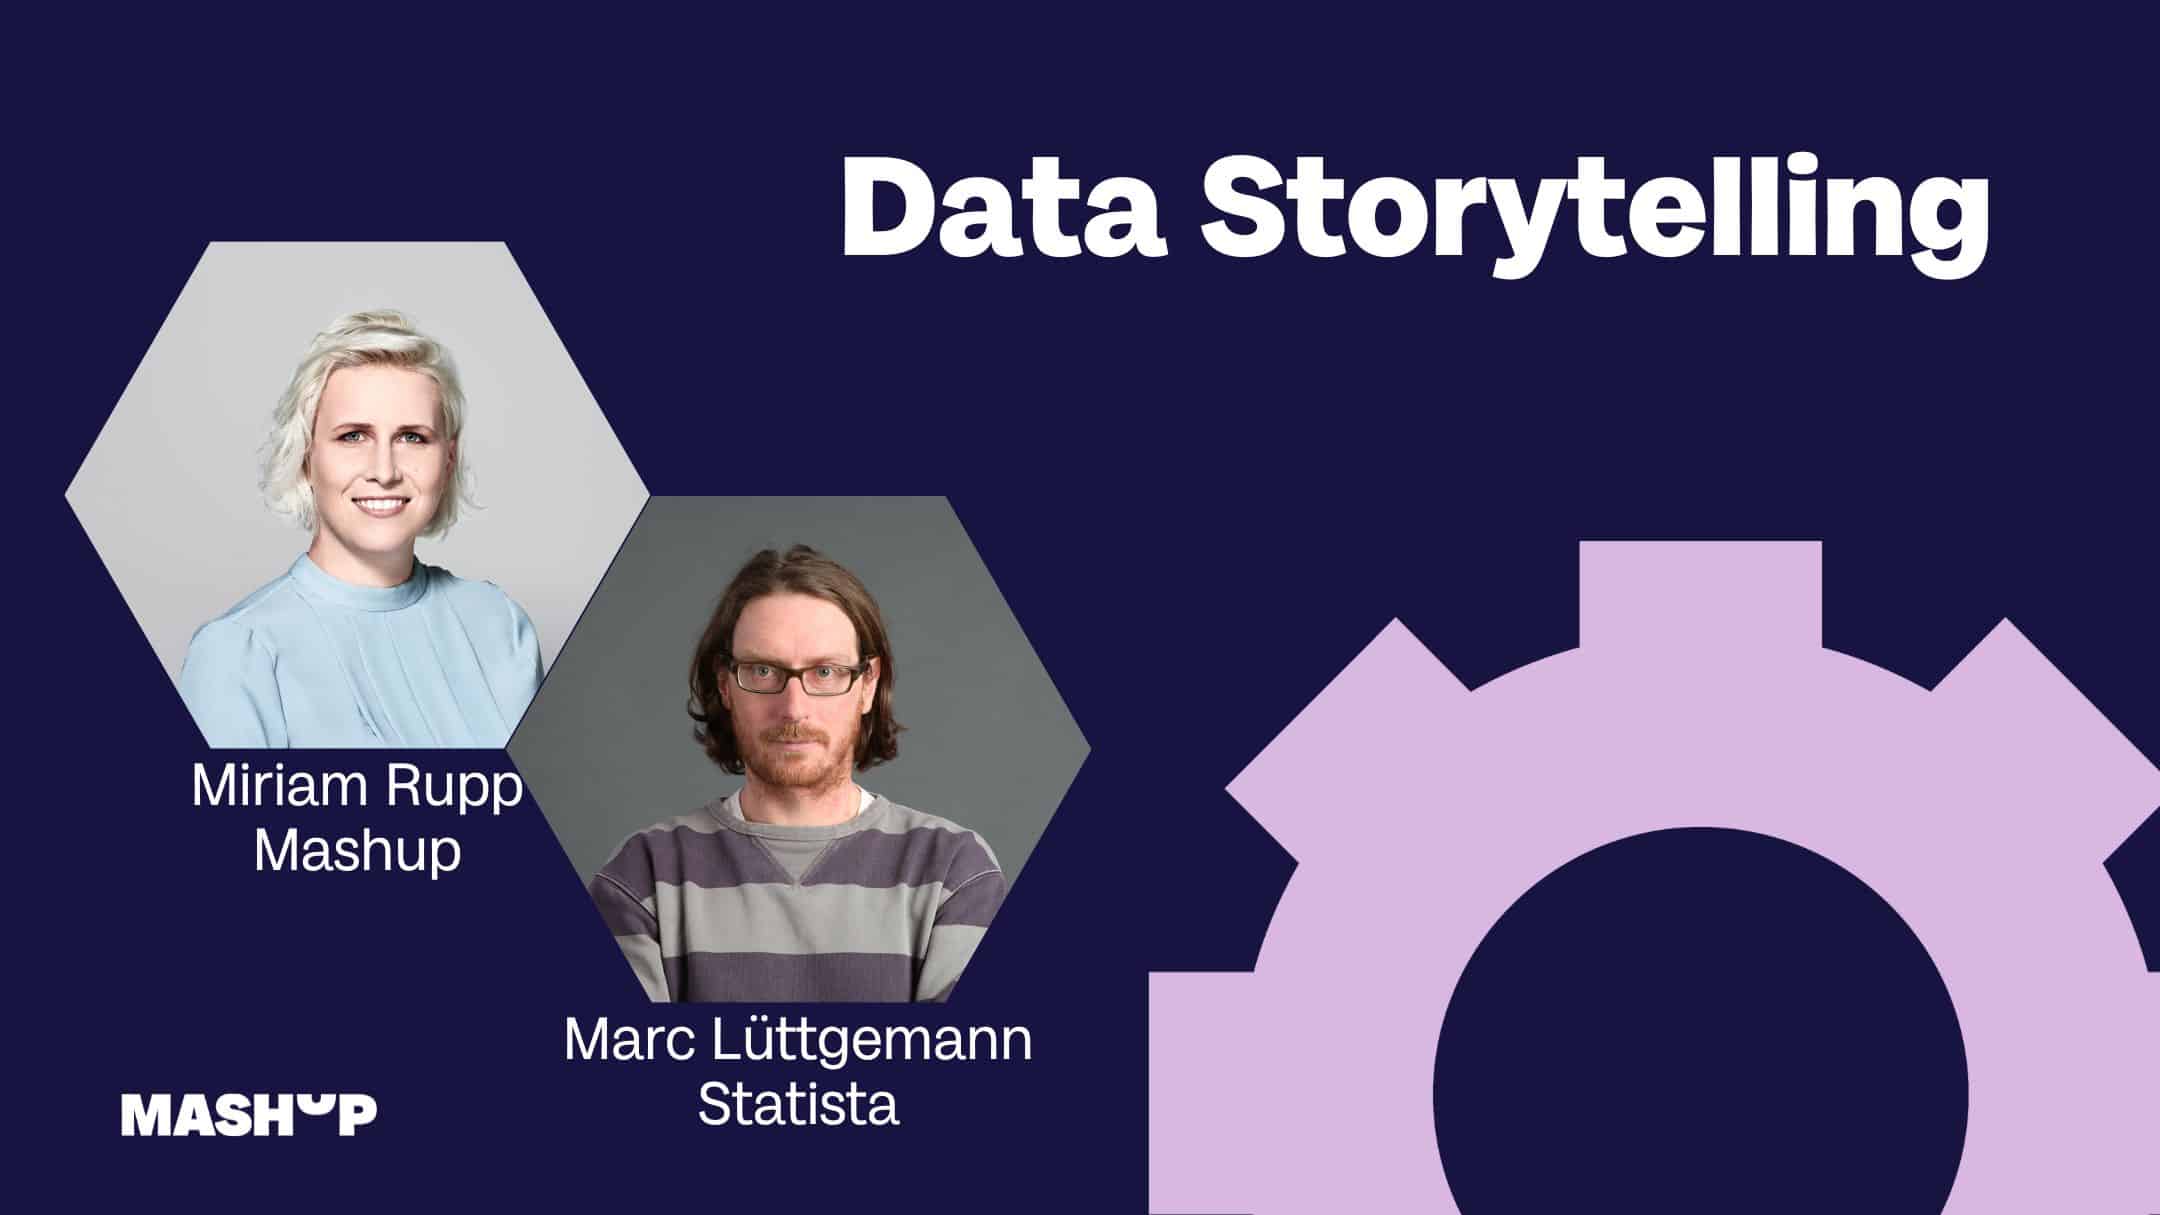 Data Storytelling – Marc Lüttgemann von Statista